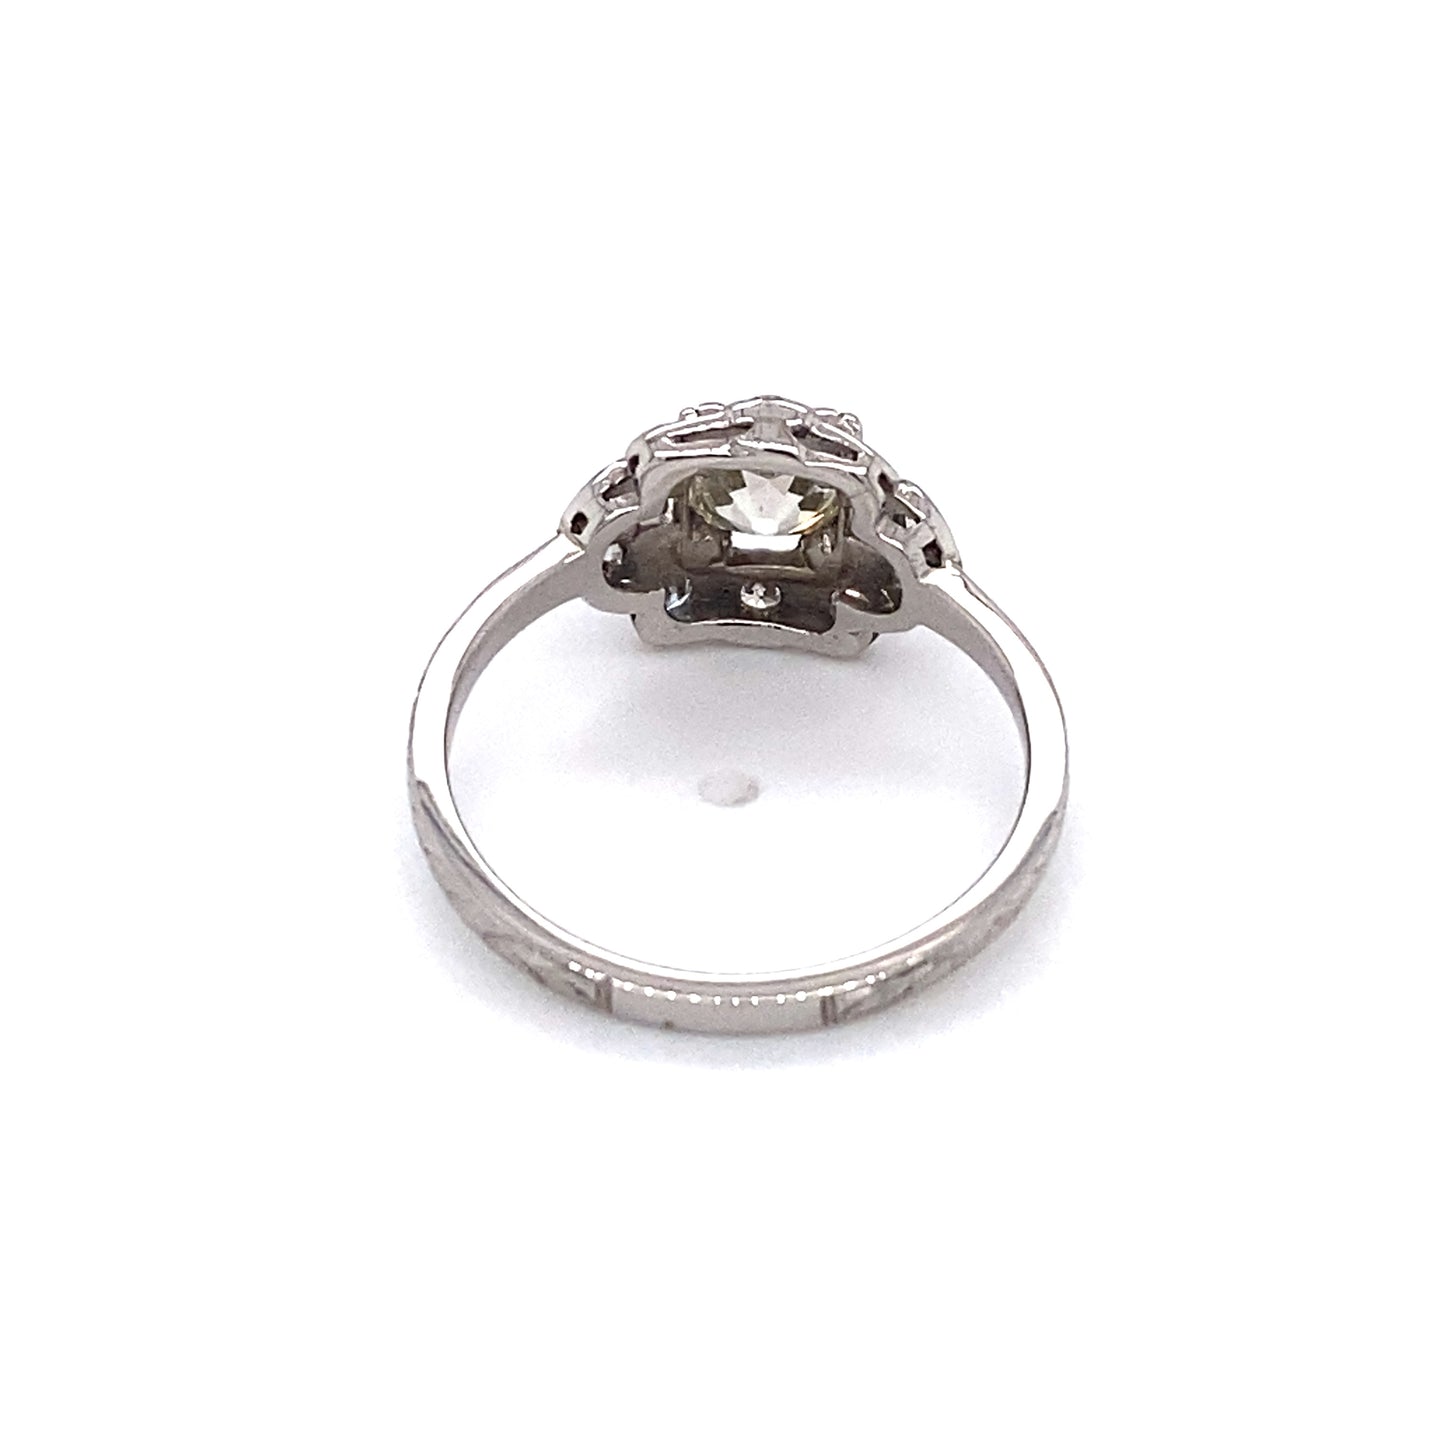 Circa 1920s Art Deco 0.80 Carat Diamond Engagement Ring in Platinum